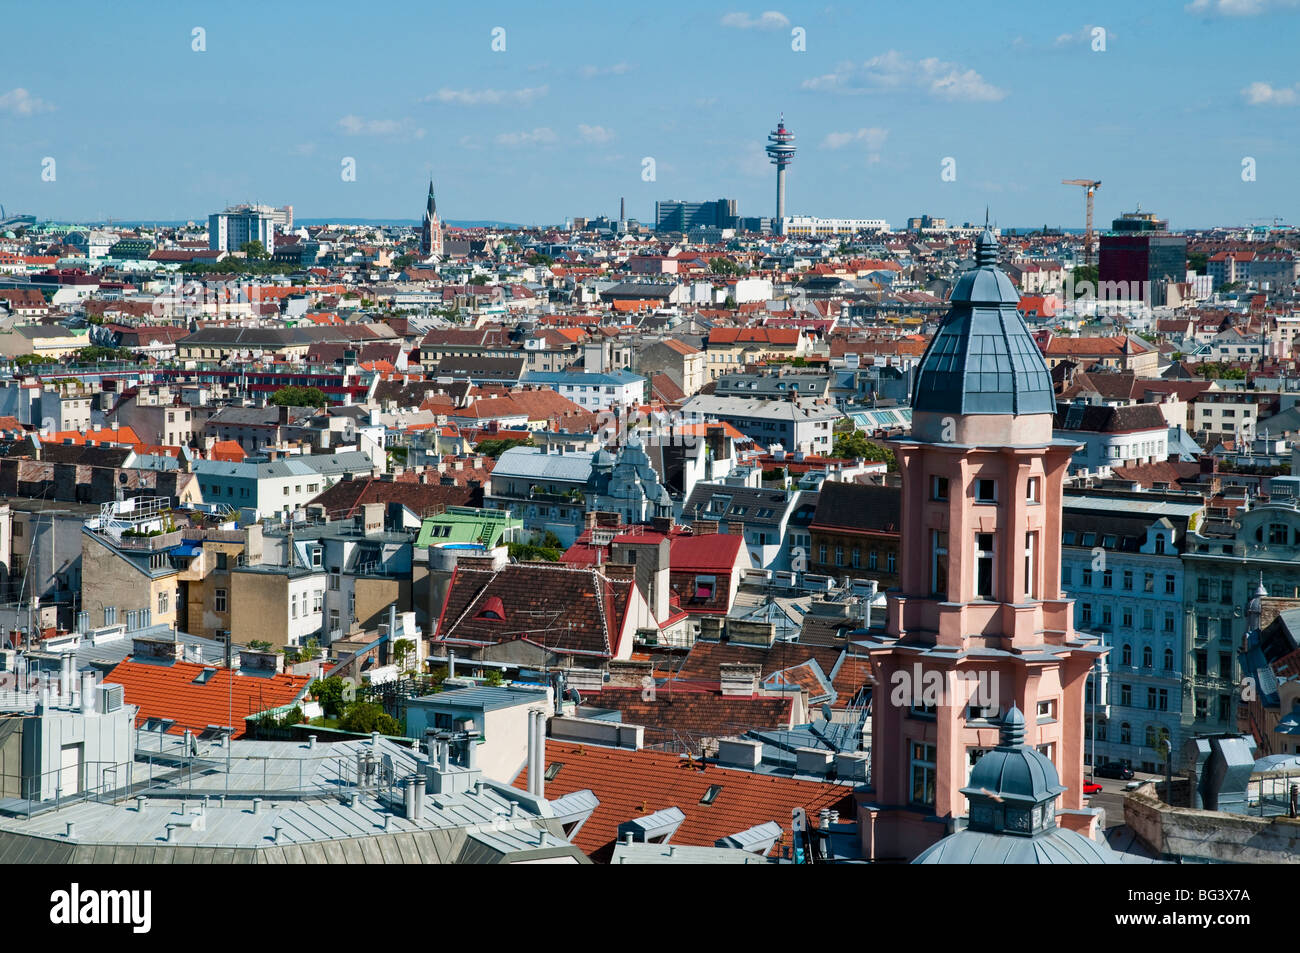 Blick auf Dächer, Wien, Österreich | voir sur les toits, Vienne, Autriche Banque D'Images